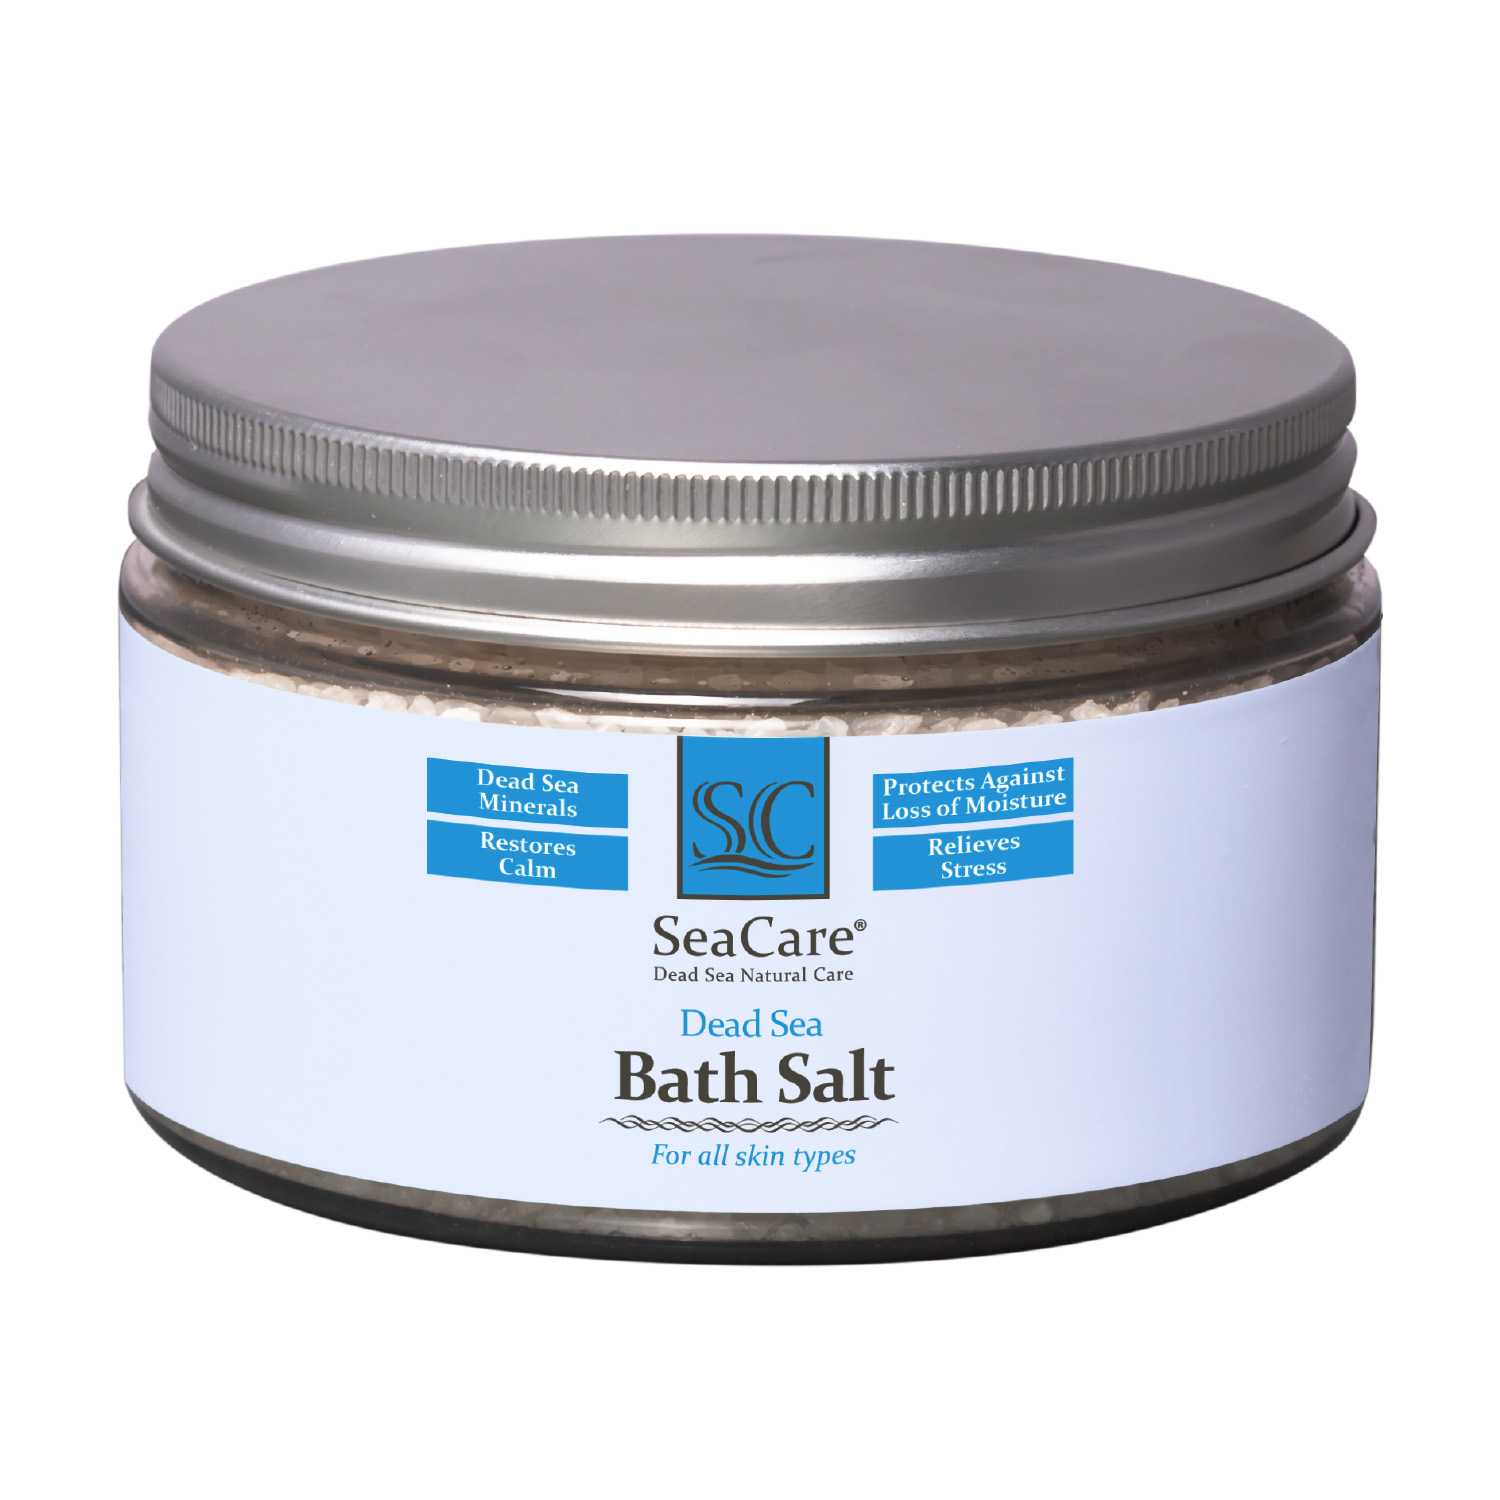 Соль для ванны SeaCare с минералами мертвого моря 300 г seacare расслабляющая соль мертвого моря для ванны с восстанавливающим и успокаивающим эффектом 300